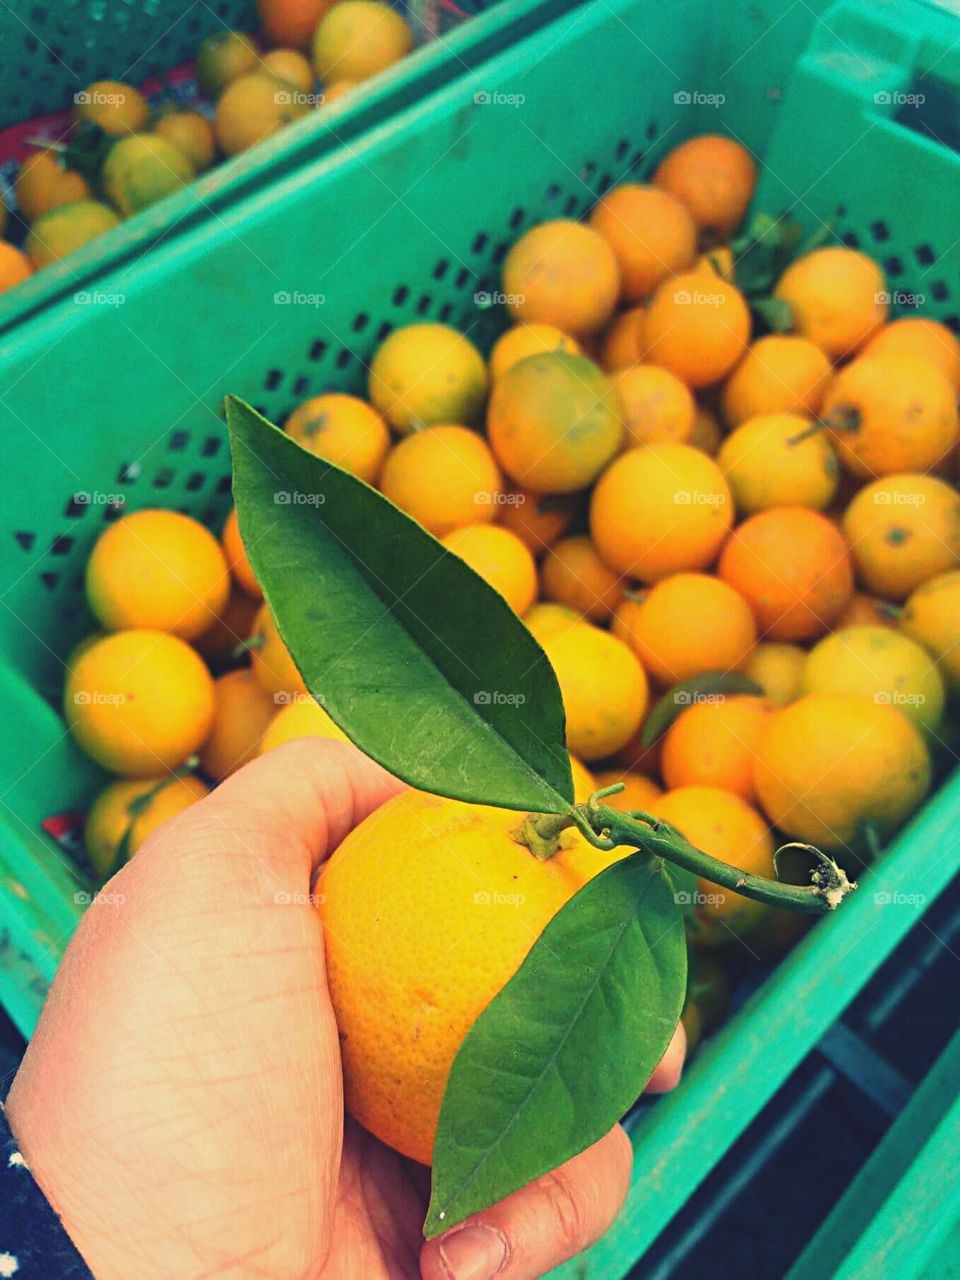 Local mandarine in Malta